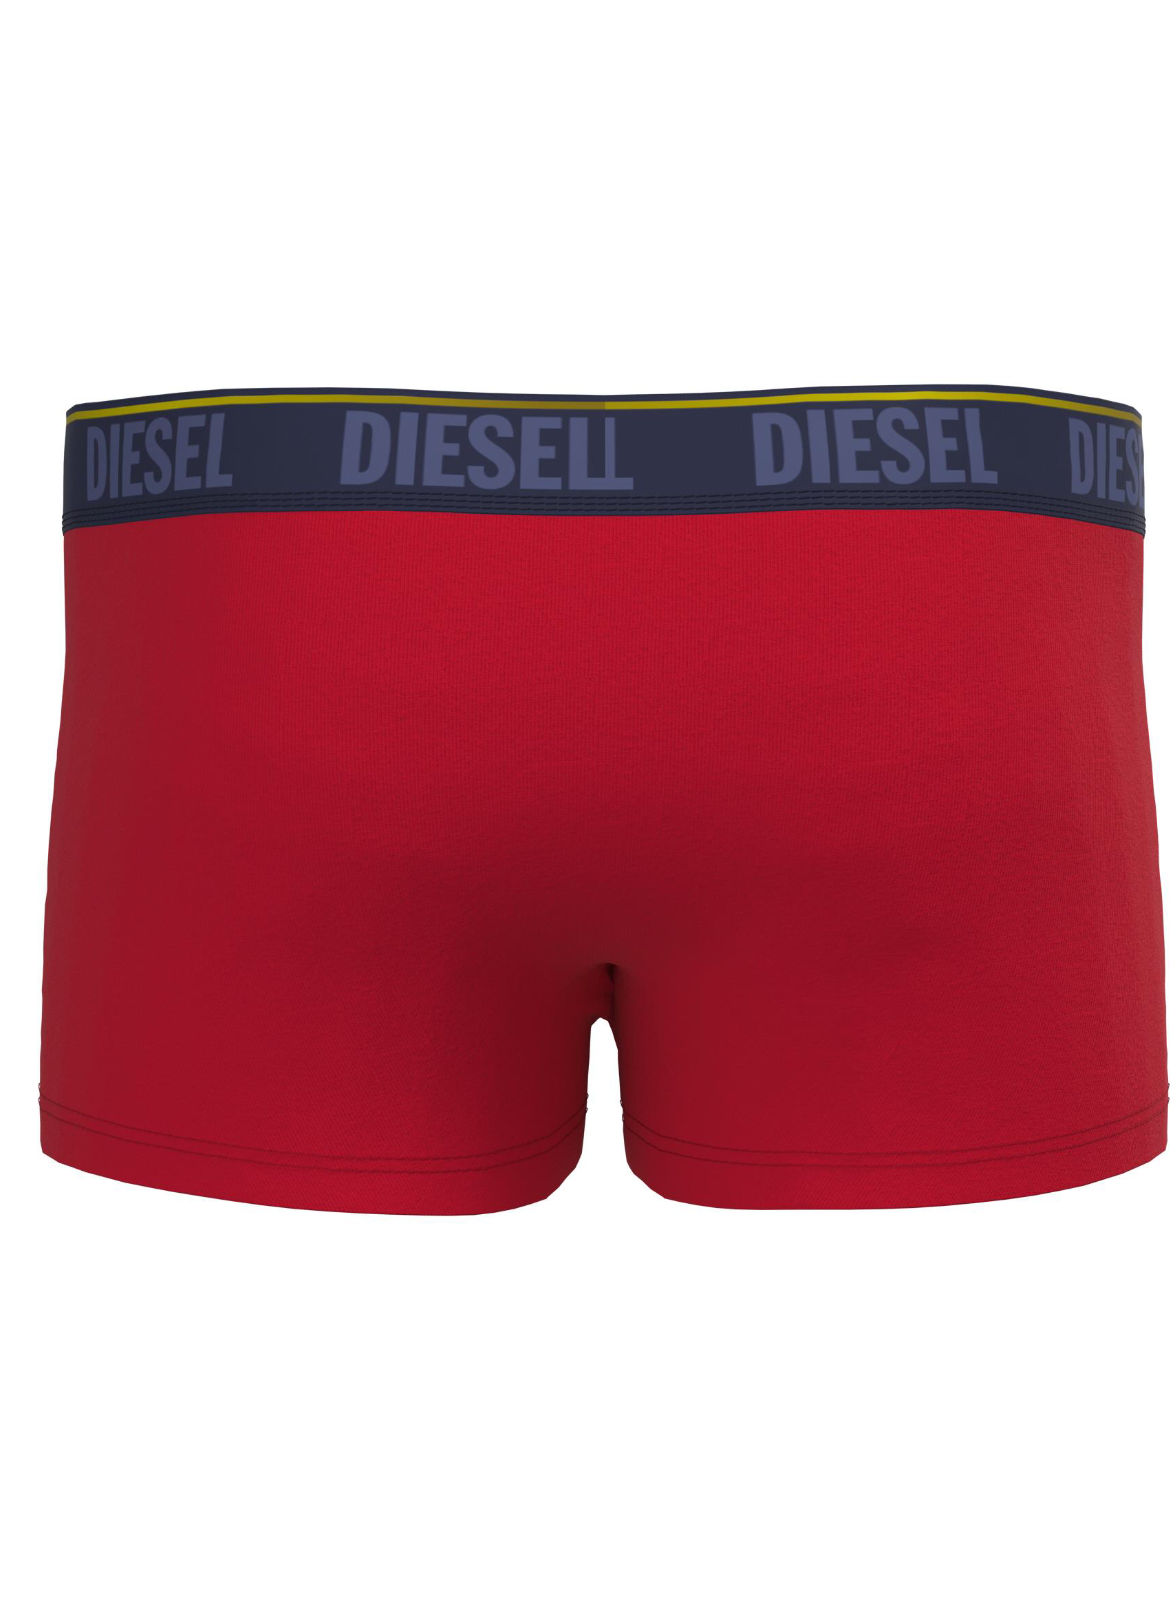 Diesel - Damien Boxer Three Pack - Green/Red/Black